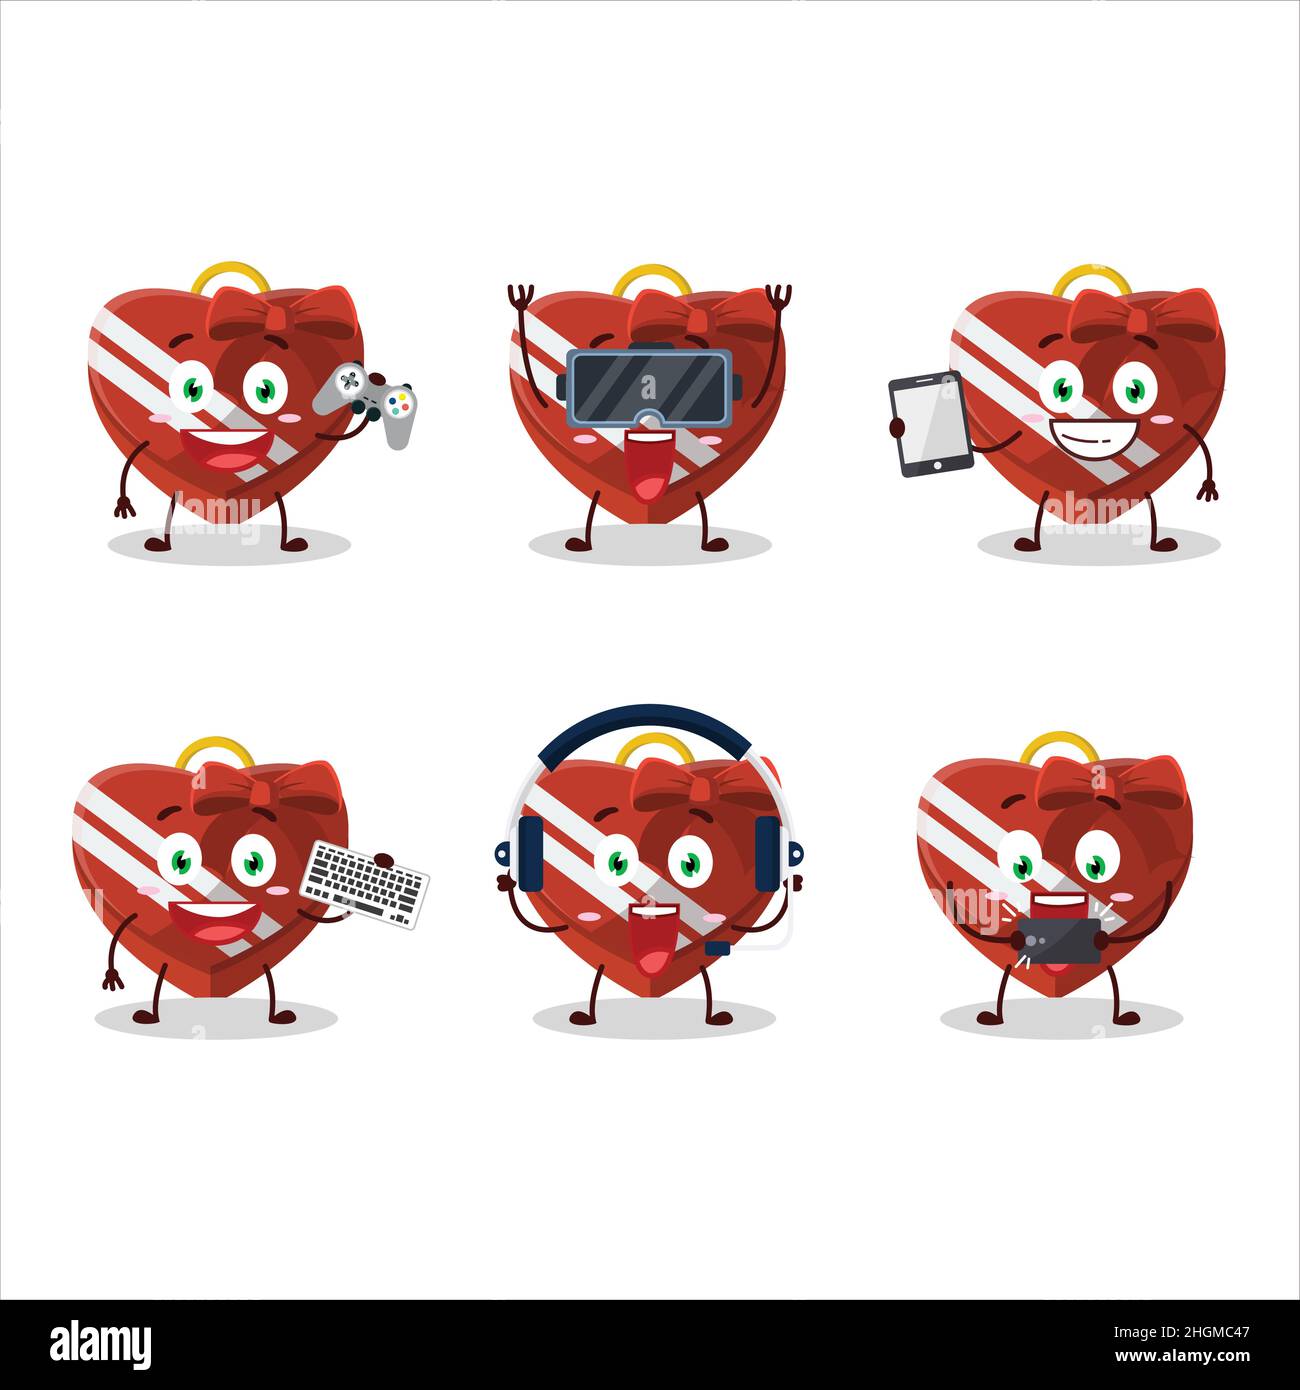 Rouge amour boîte cadeau personnage de dessin animé jouent à des jeux avec divers émoticônes mignons.Illustration vectorielle Illustration de Vecteur